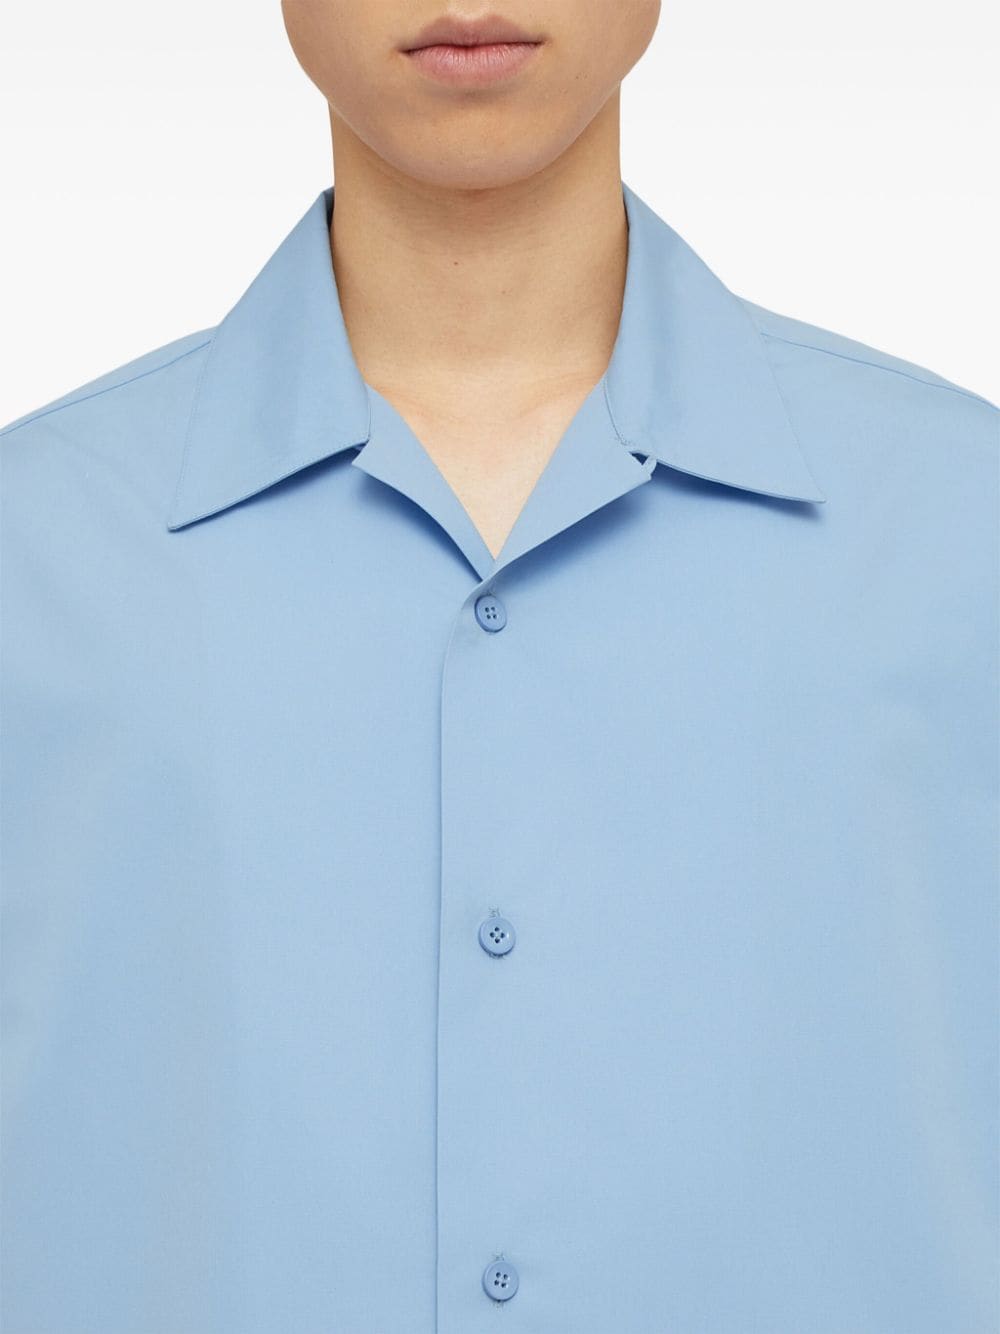 JIL SANDER Sky Blue Cotton Poplin Texture Spread Collar Short Sleeved Shirt for Men